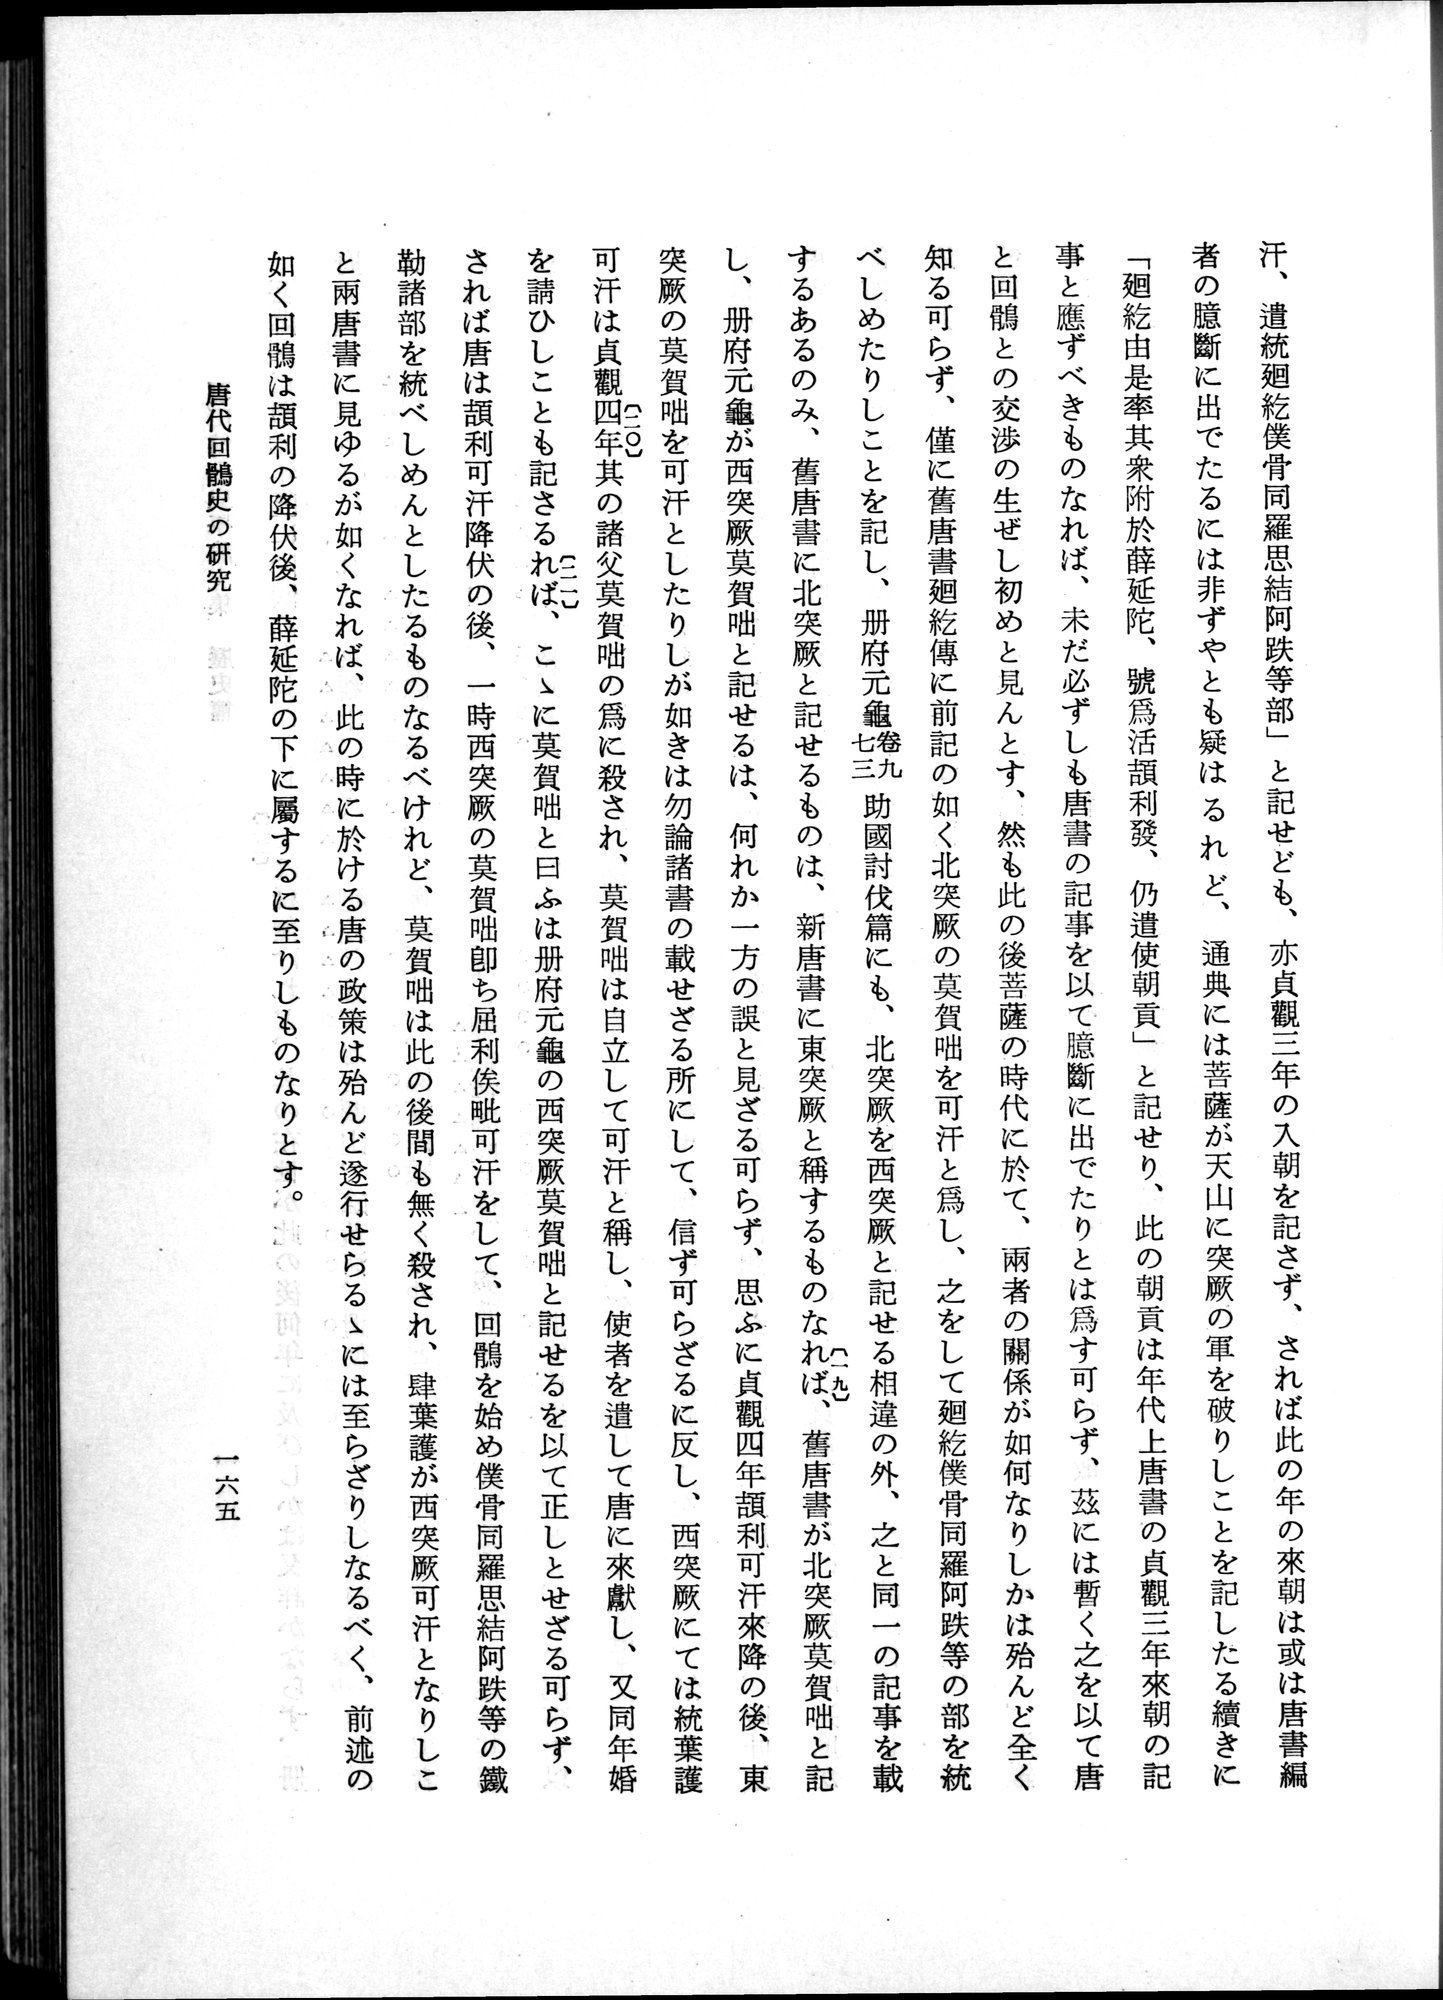 羽田博士史学論文集 : vol.1 / Page 203 (Grayscale High Resolution Image)